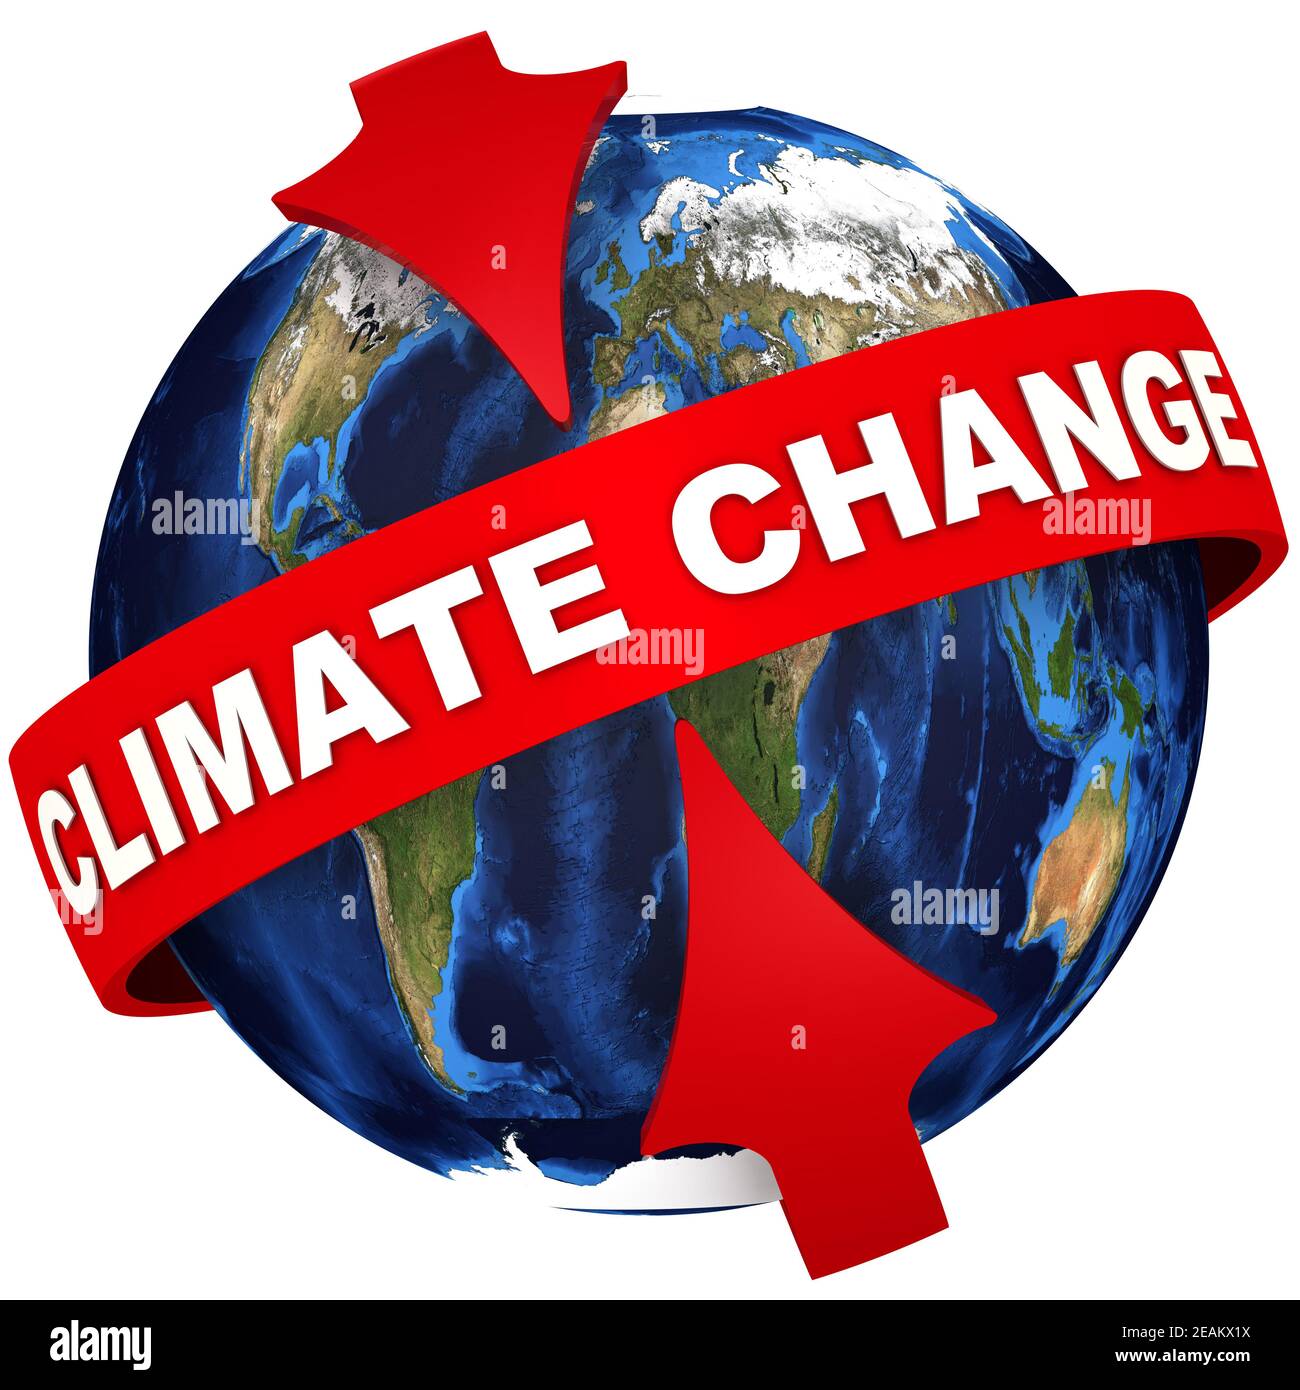 Biến đổi khí hậu toàn cầu là một thách thức lớn đang đối mặt với toàn nhân loại. Hãy cùng chúng tôi tìm hiểu những hình ảnh về hiện tượng biến đổi khí hậu để nhận thức rõ hơn về tầm quan trọng của việc bảo vệ môi trường.